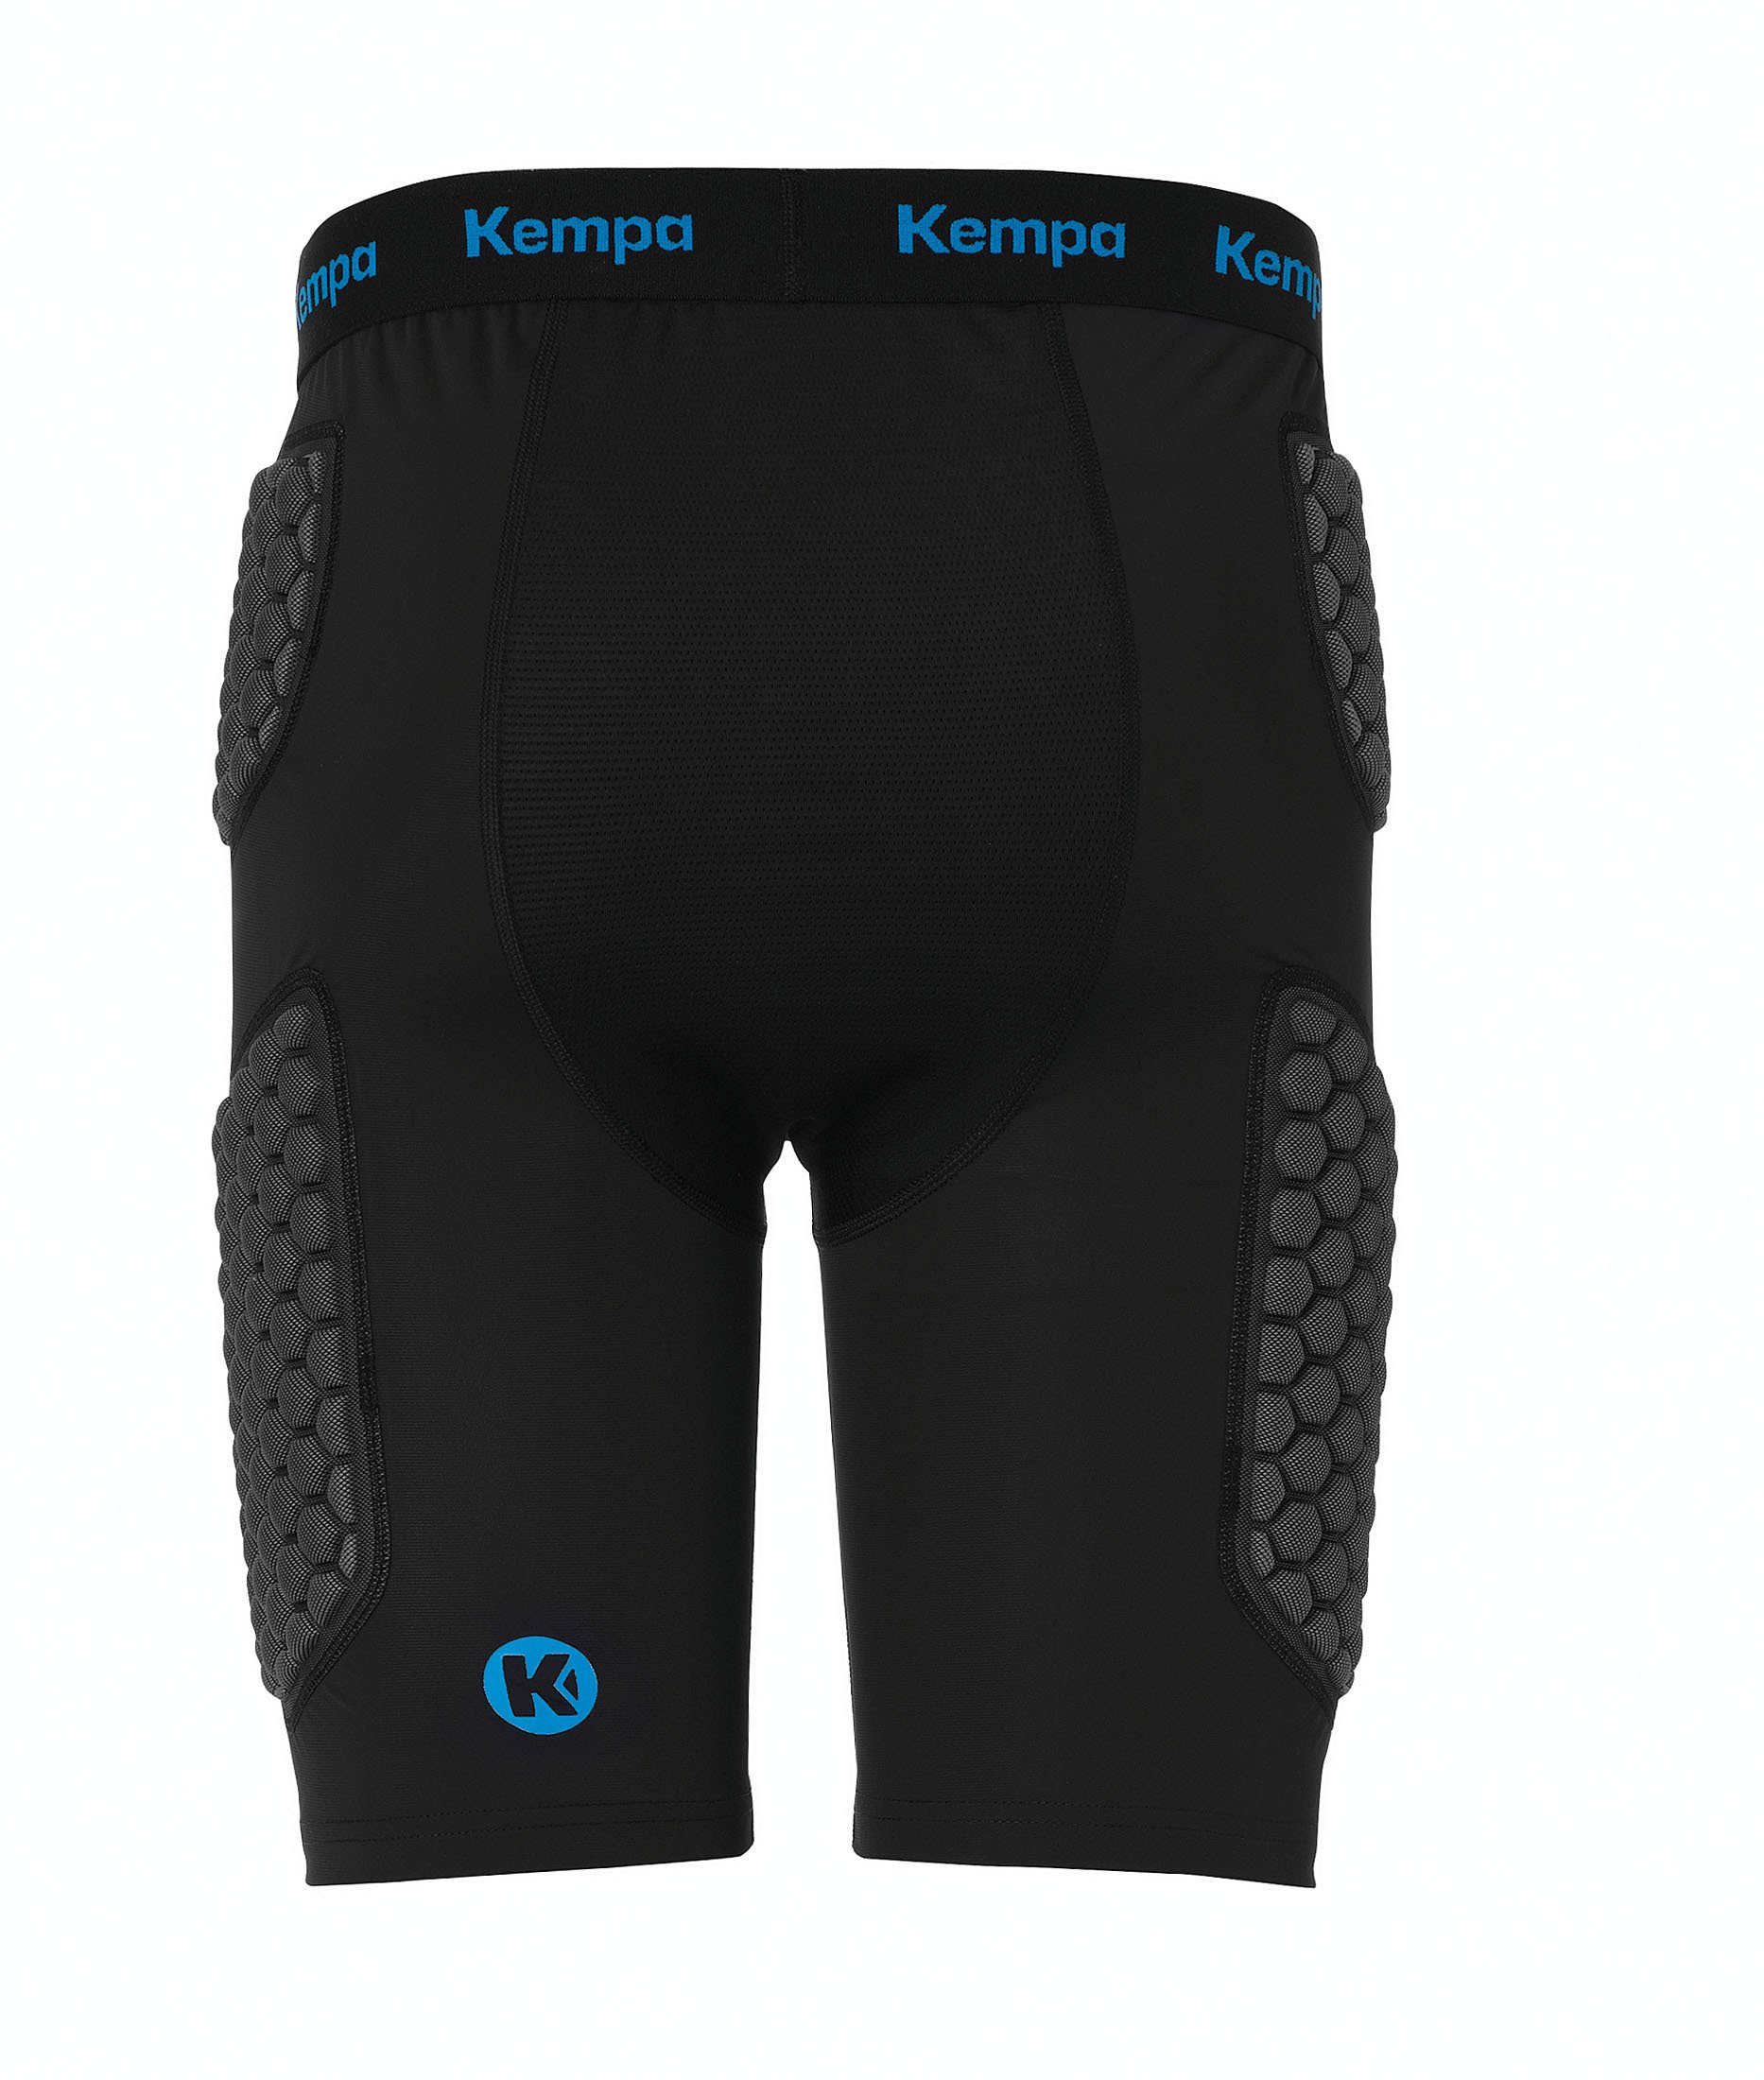 Kempa Shorts Kempa elastisch PROTECTION Protektorenshorts SHORTS, Protection